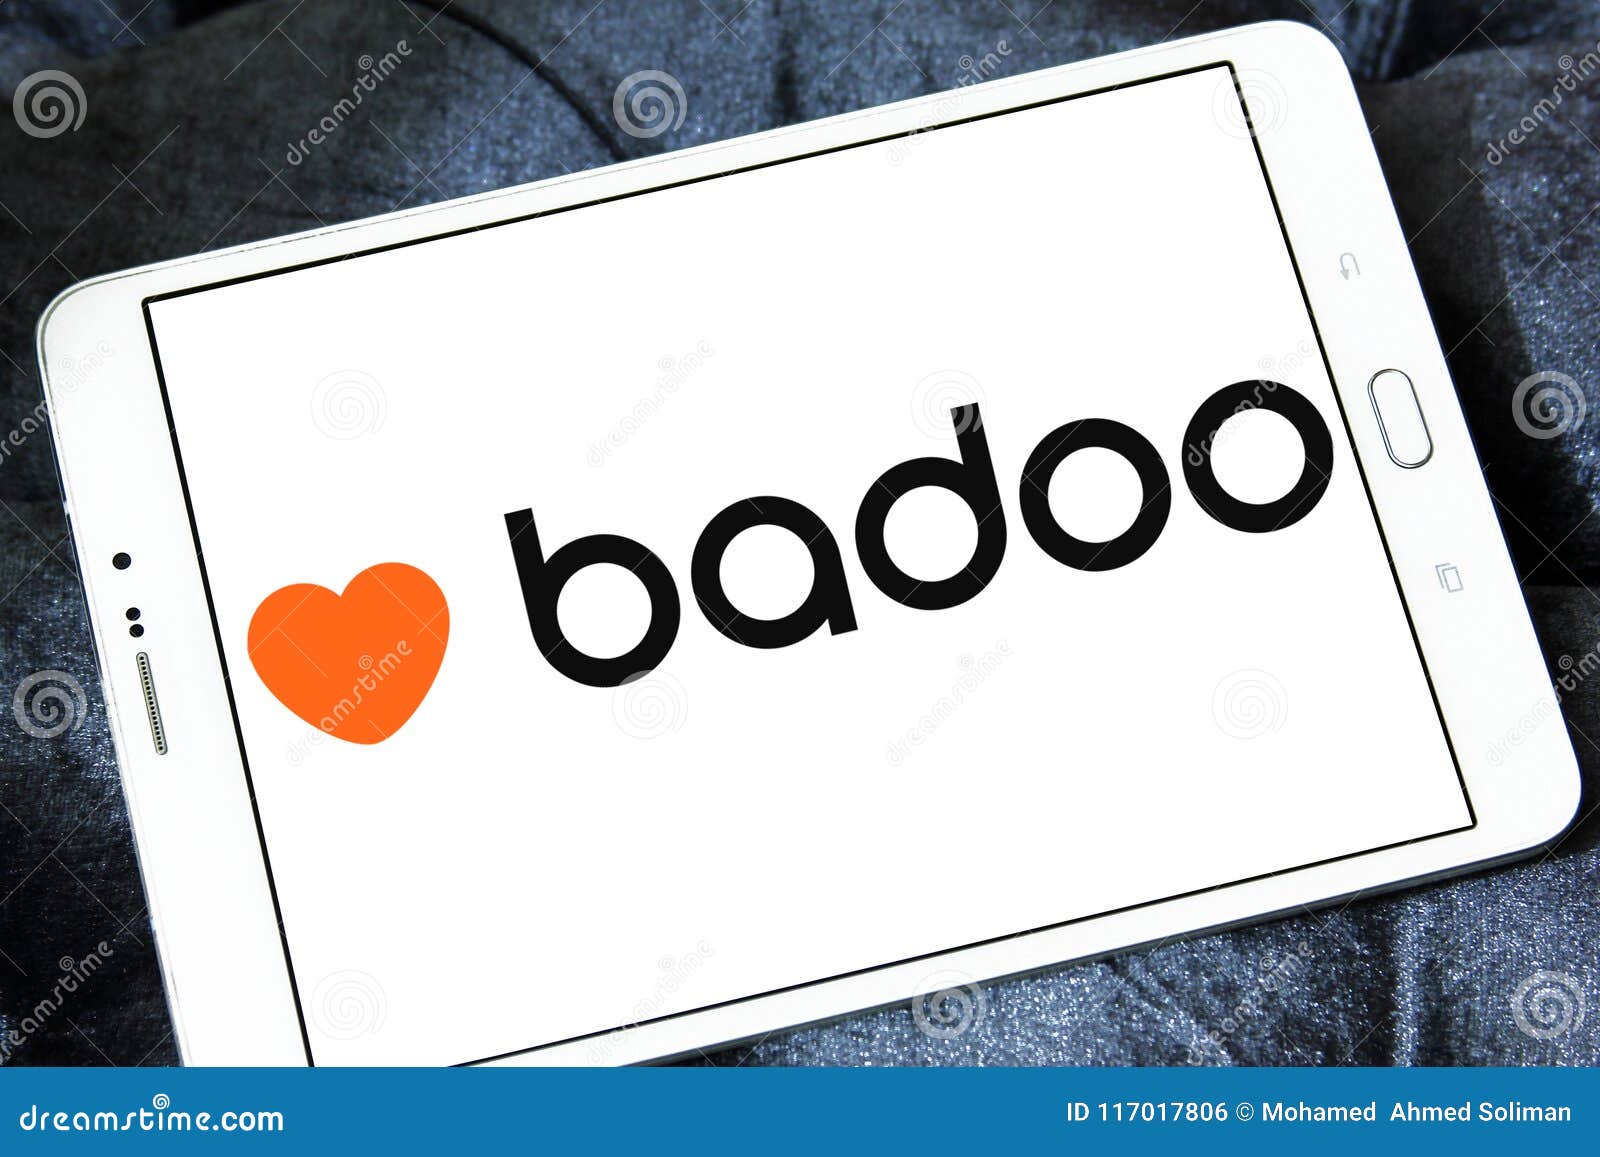 Badoo photo download